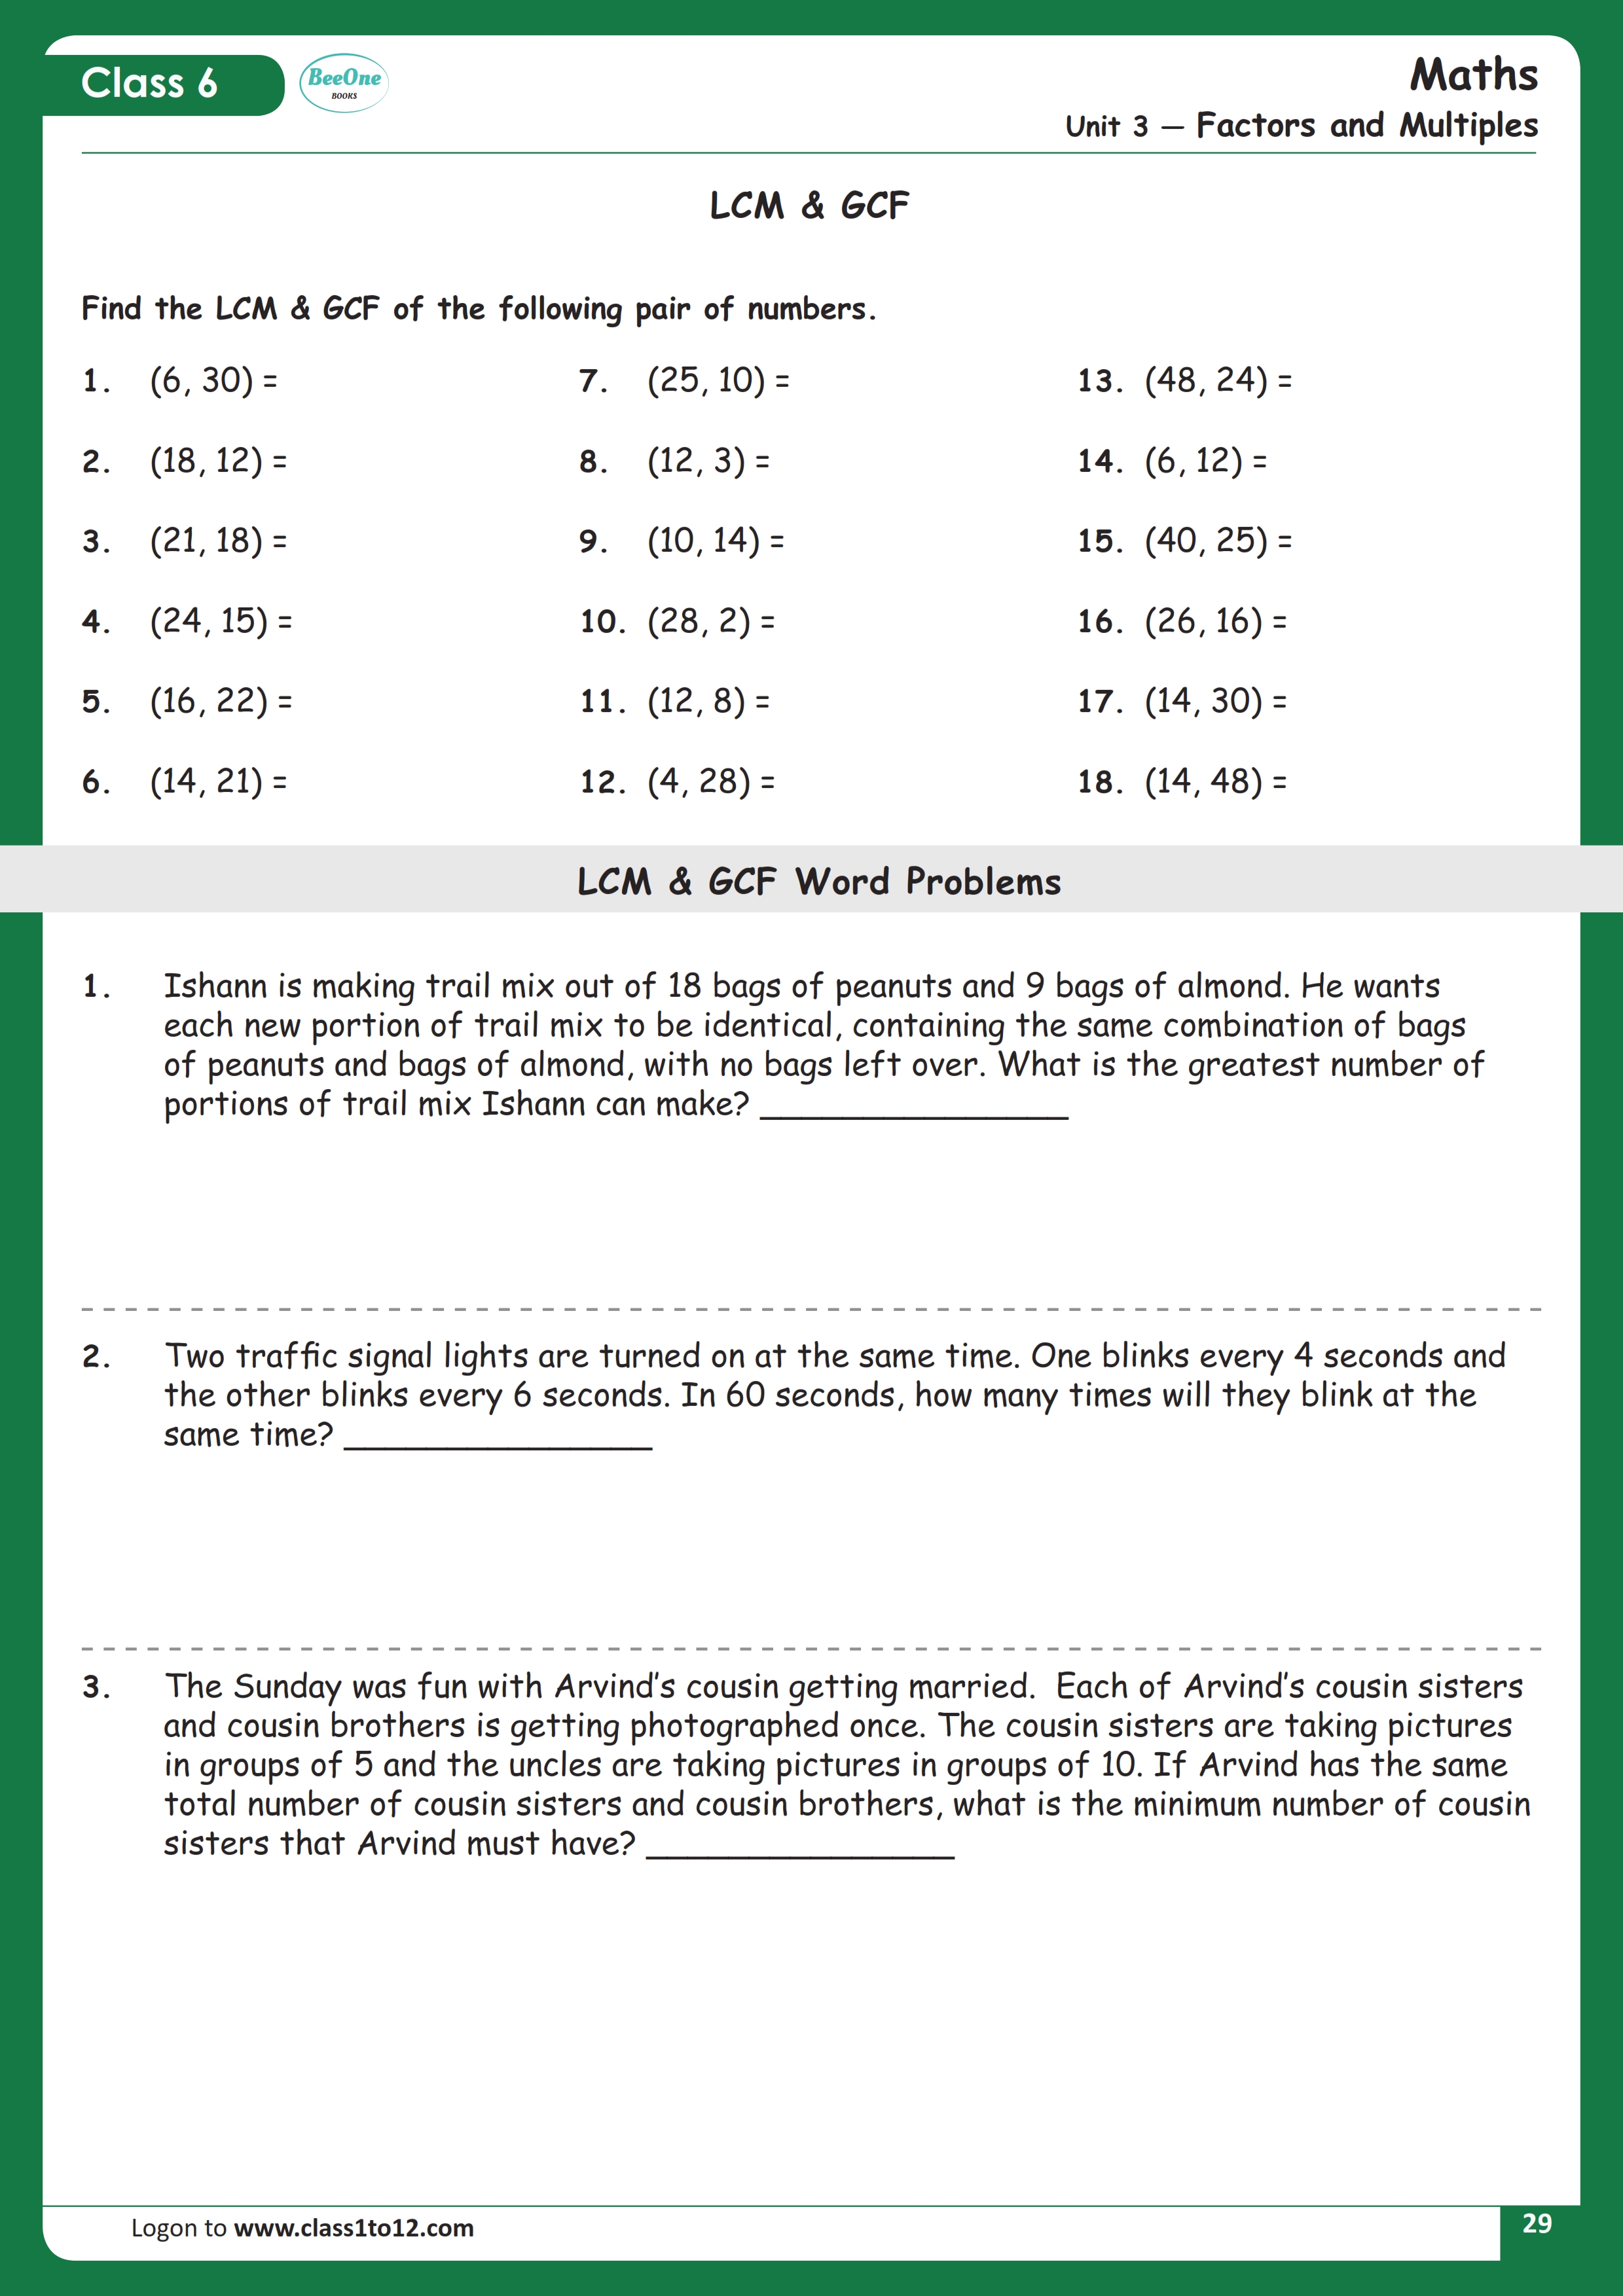 LCM GCF Class 6 Maths Worksheet